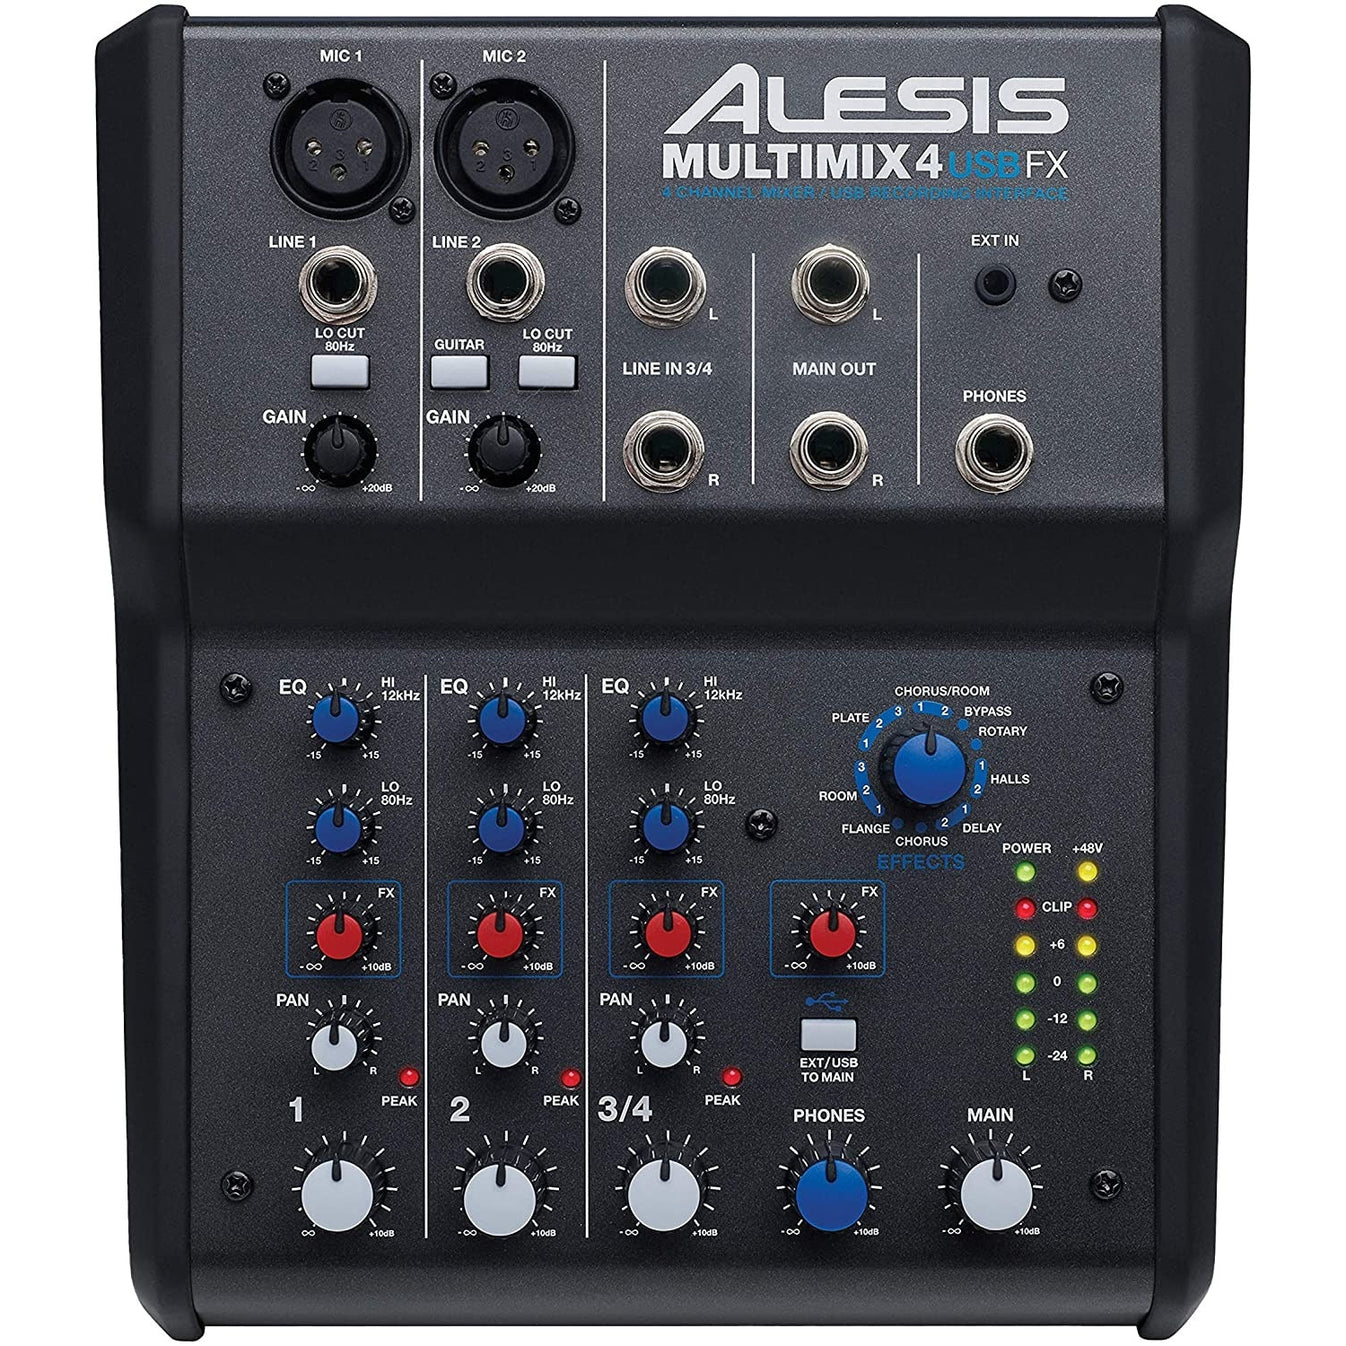 Mixer Alesis MultiMix 4 USB Mixer With FX-Mai Nguyên Music